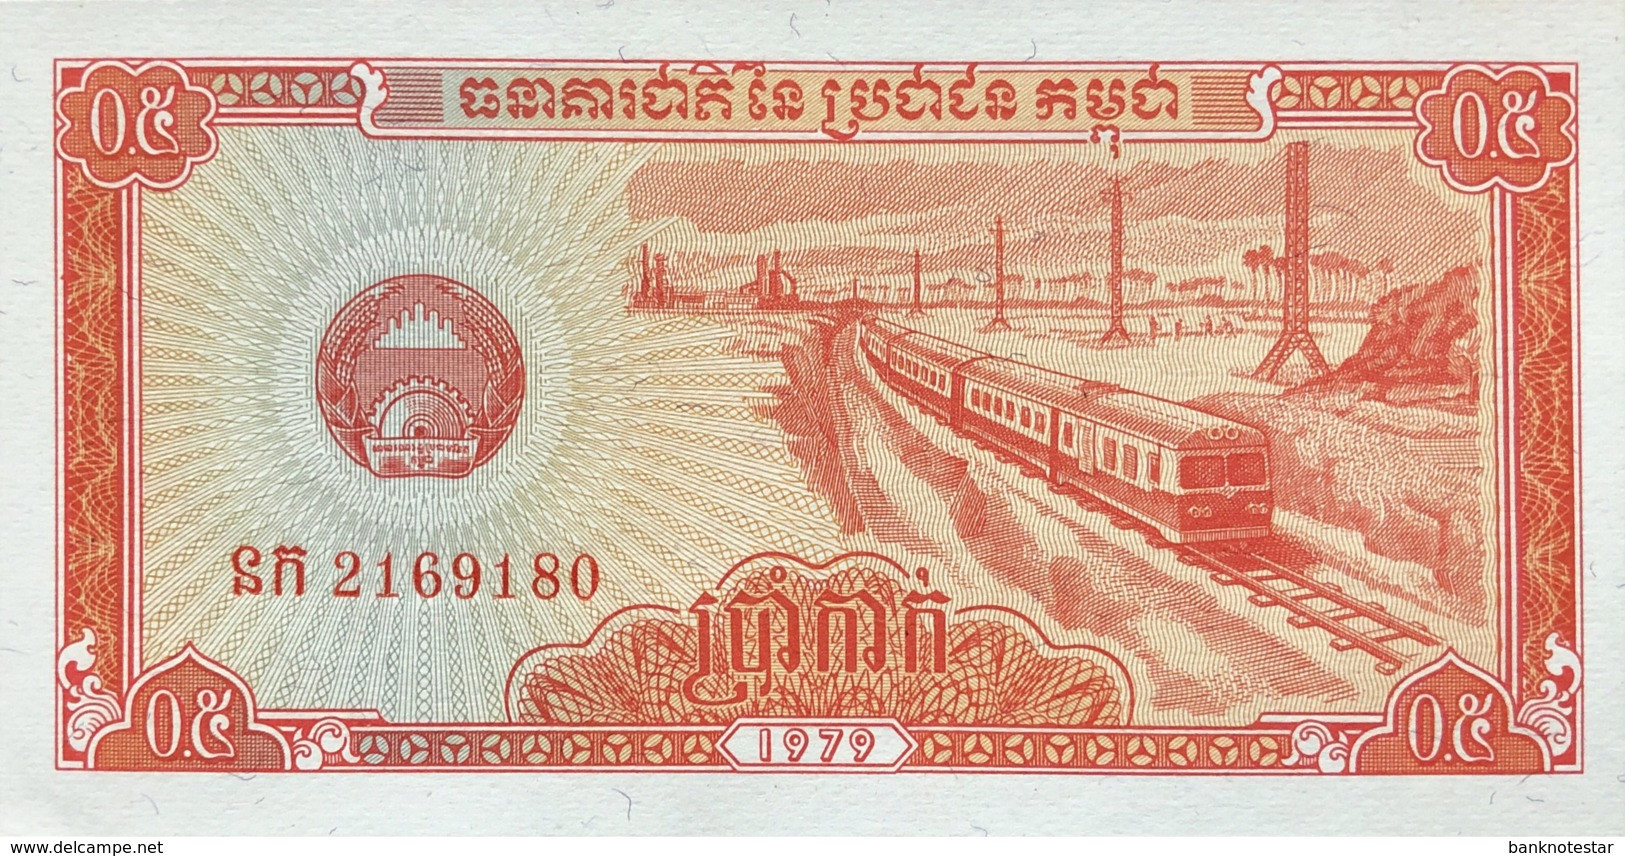 Cambodia 0.5 Riel, P-27 (1979) - UNC - Cambodia